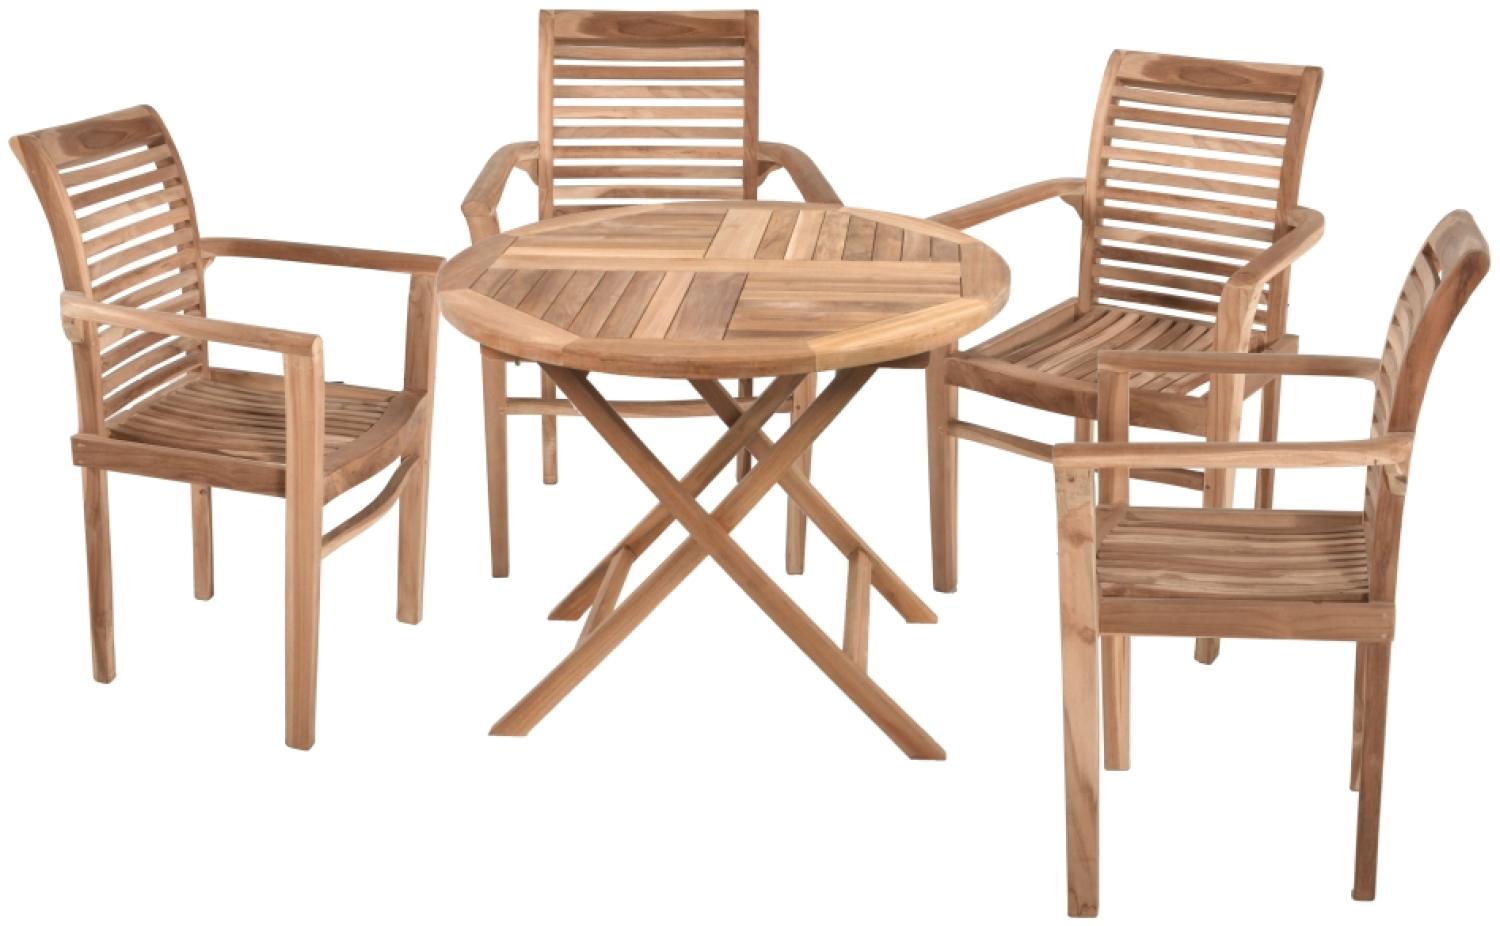 5tlg. Teak Tischgruppe Gartenmöbel Gartentisch Garten Armsessel Sessel Tisch Bild 1